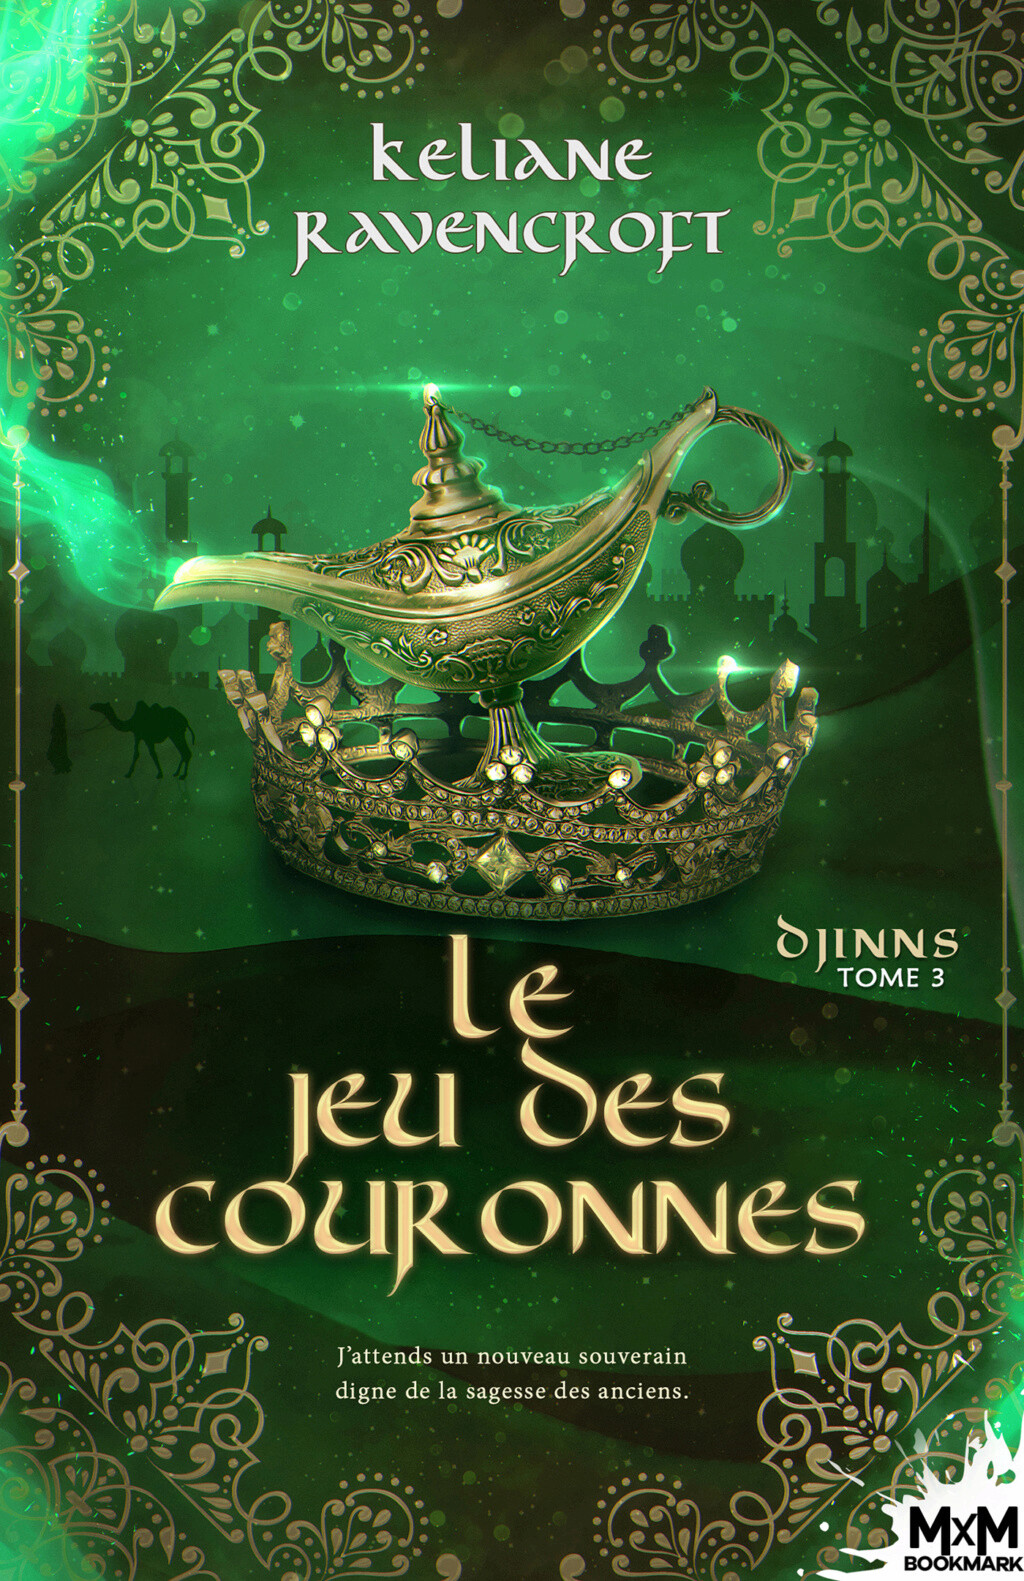 Djinns - Tome 3 : Le jeu des couronnes de Keliane Ravencroft 3dca8810